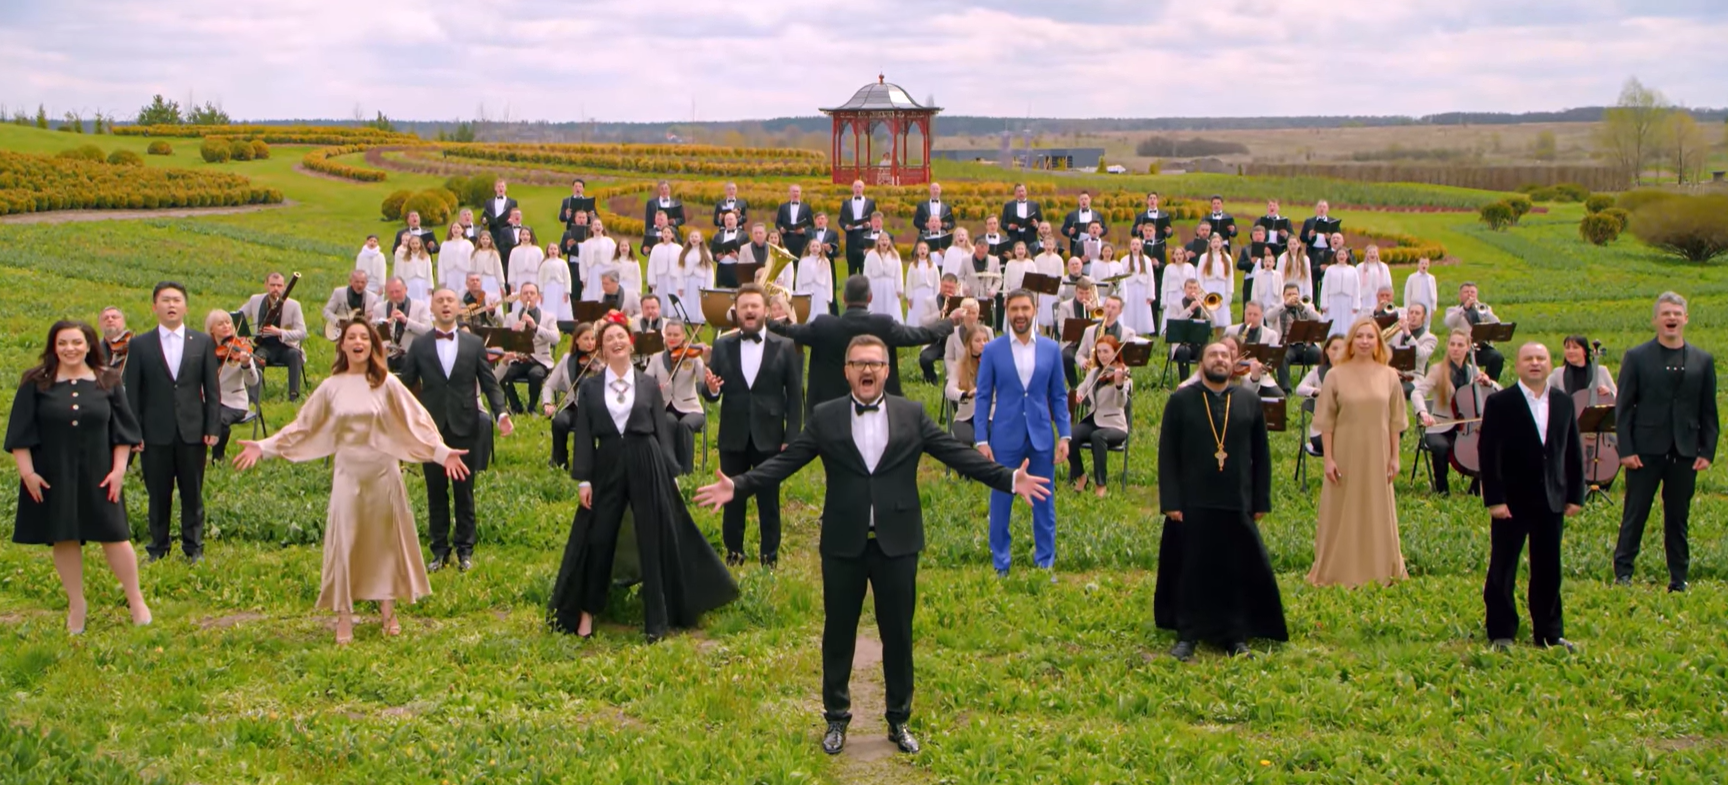 Пономарьов записав із зірками унікальний піснеспів "Христос Воскрес" 12 мовами (відео)